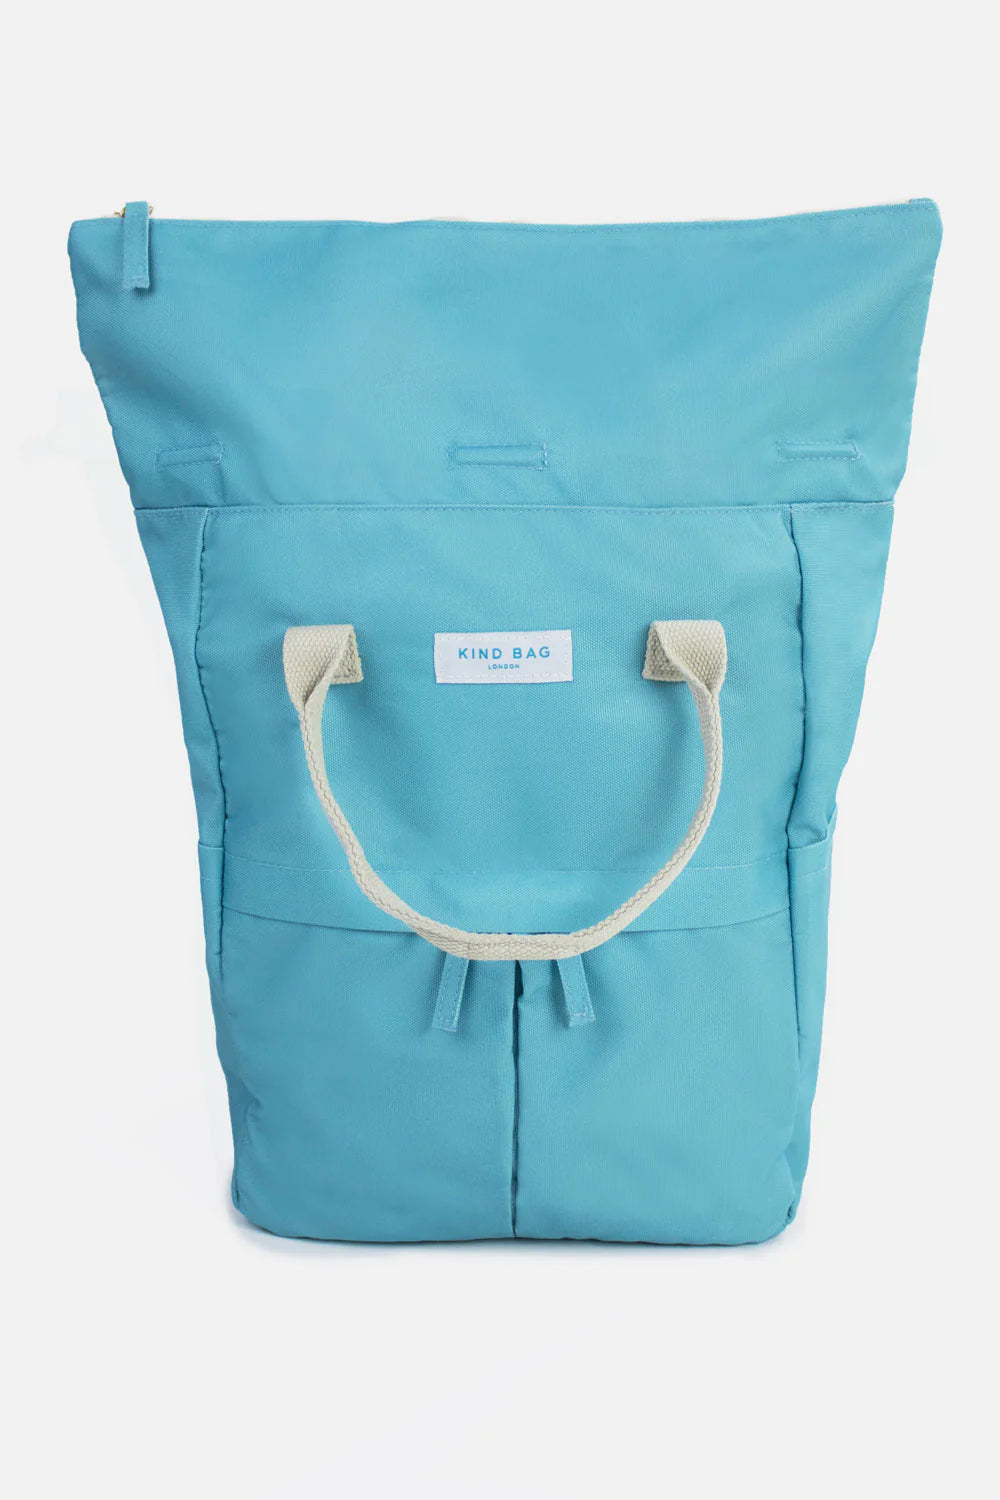 Teal | “Hackney” 2.0 Backpack | Medium